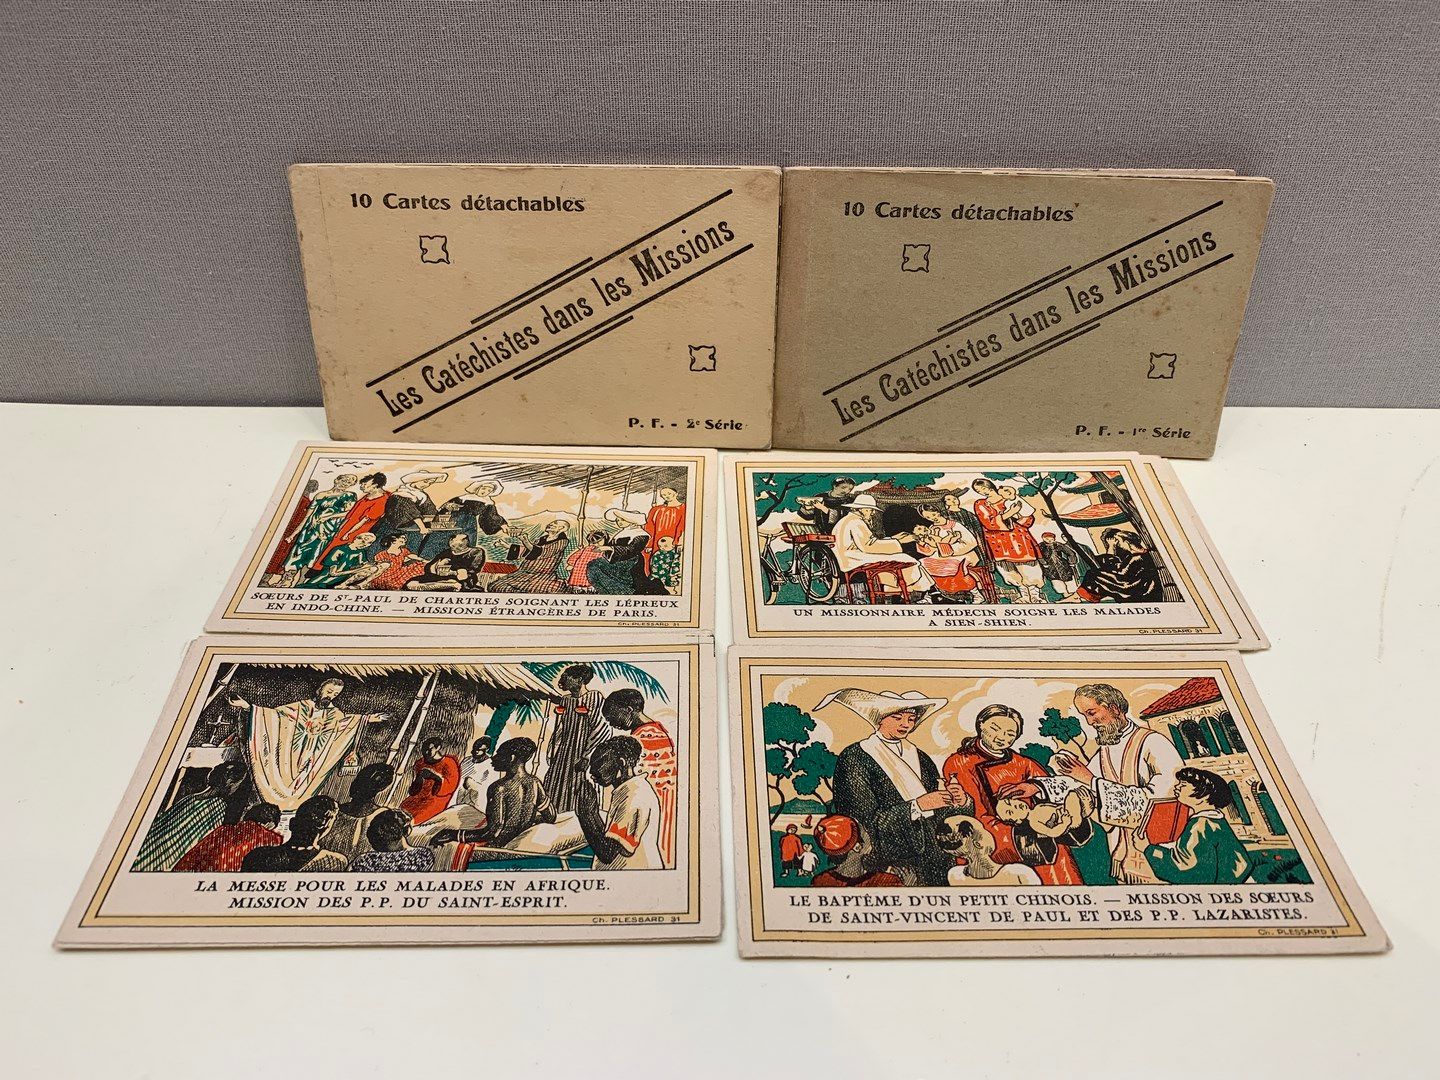 Null 两本包含十张可拆卸卡片的小册子《传教士》第一和第二卷。

我们附上十张由查尔斯-普莱萨（Charles PLESSARD）绘制的明信片，涉及福音传教。